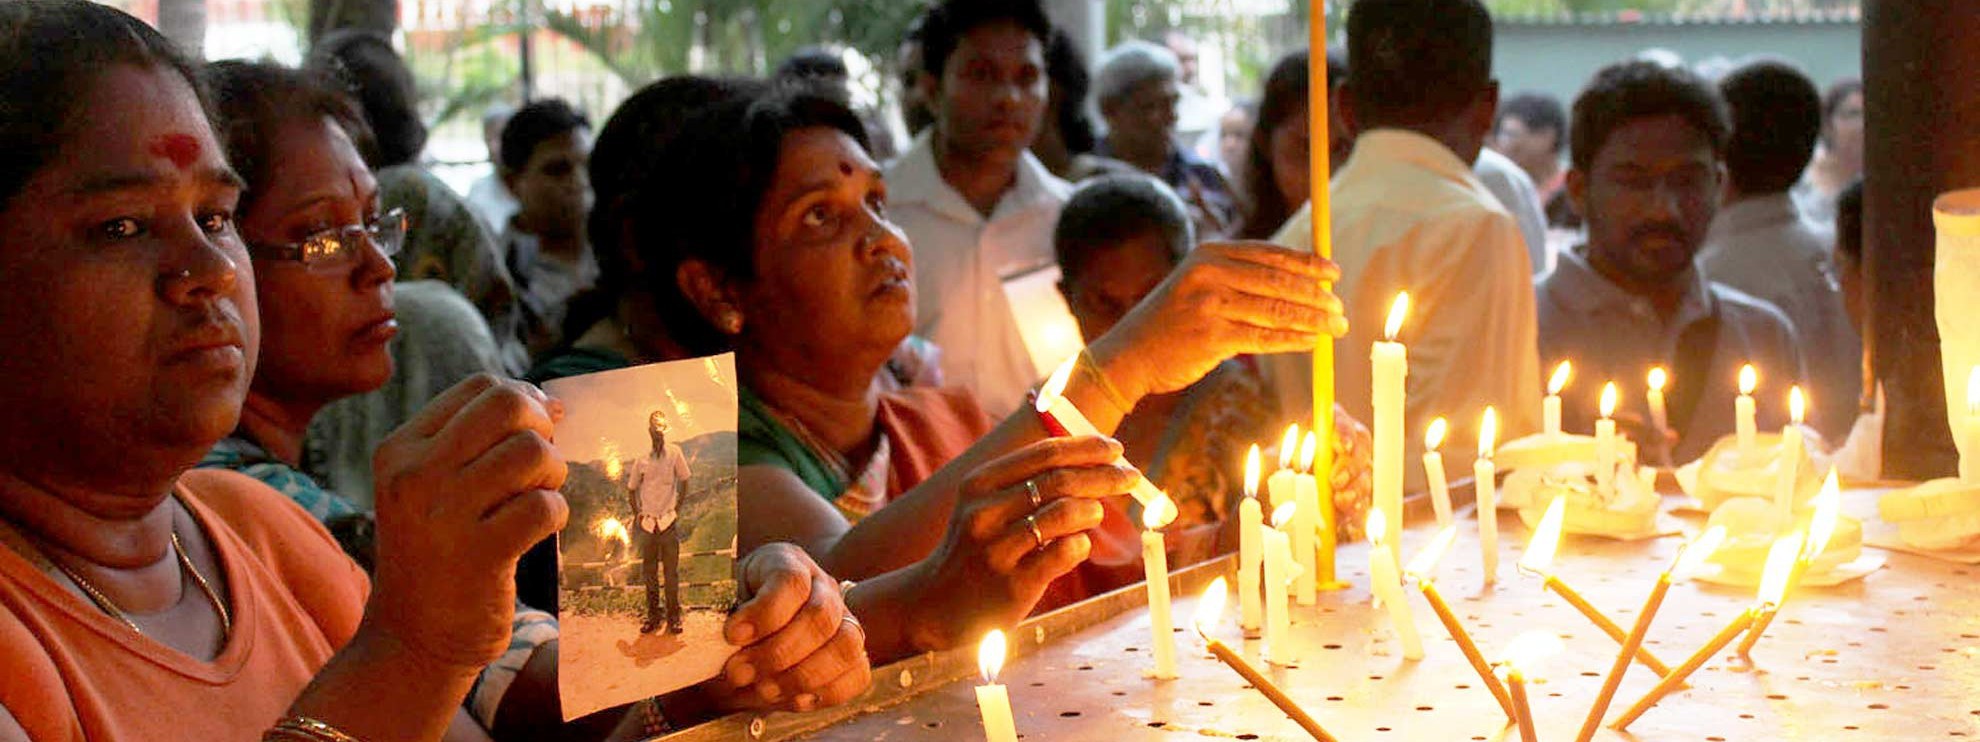 Des femmes dénoncent la disparition de leurs proches à Colombo, le 12 janvier 2012. © Vikalpasl / Creative Commons